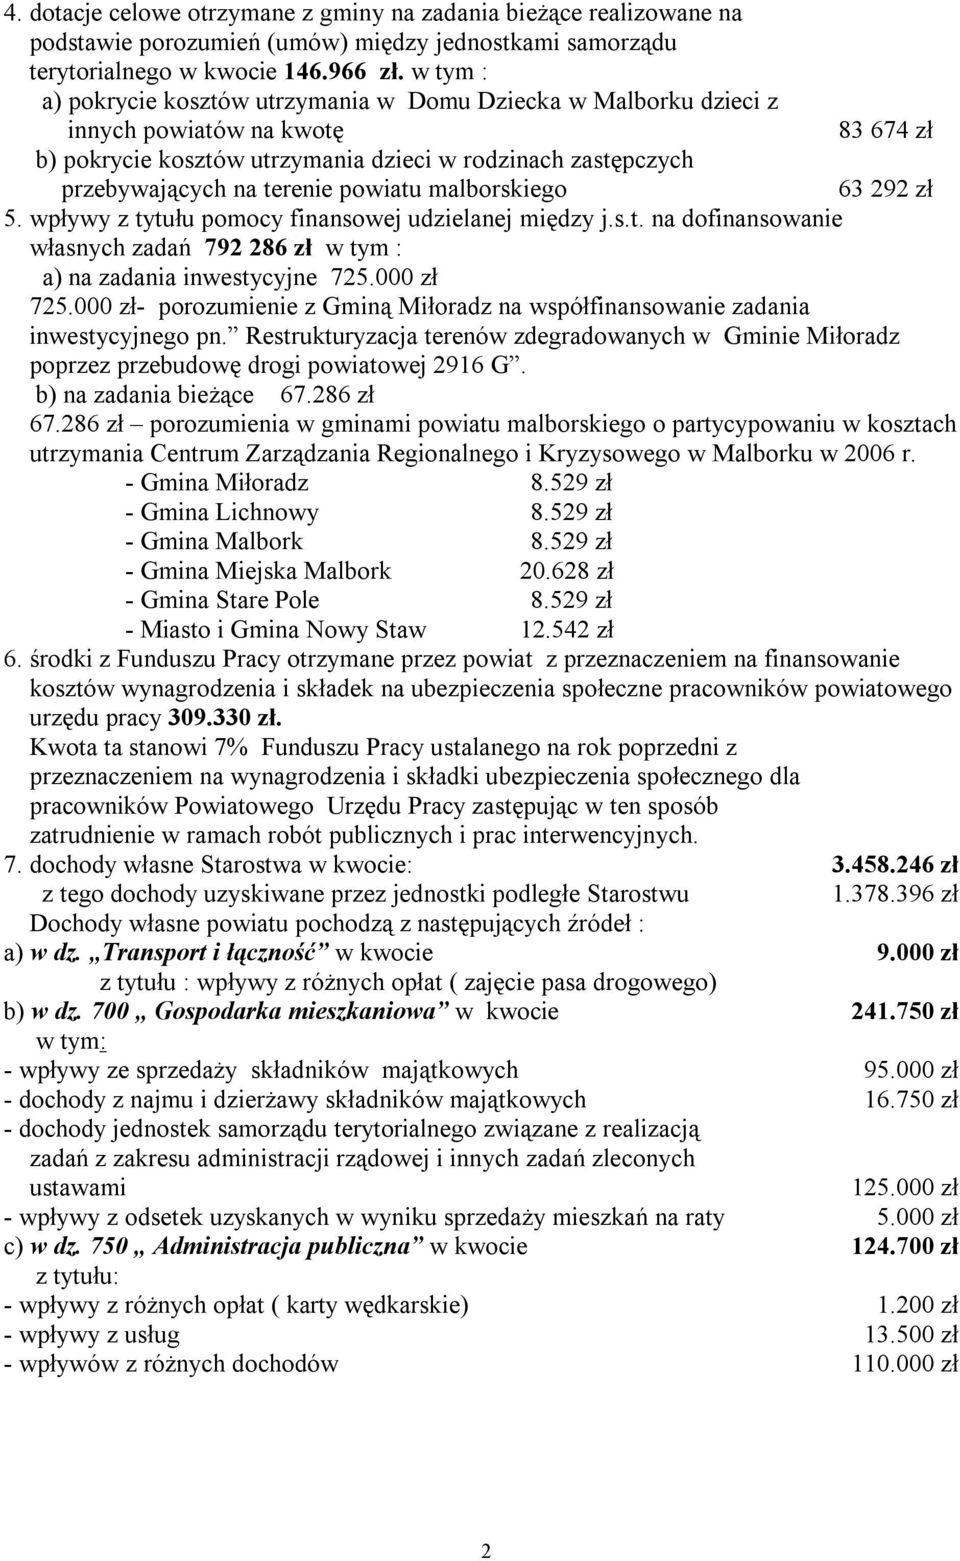 powiatu malborskiego 63 292 zł 5. wpływy z tytułu pomocy finansowej udzielanej między j.s.t. na dofinansowanie własnych zadań 792 286 zł w tym : a) na zadania inwestycyjne 725.000 zł 725.